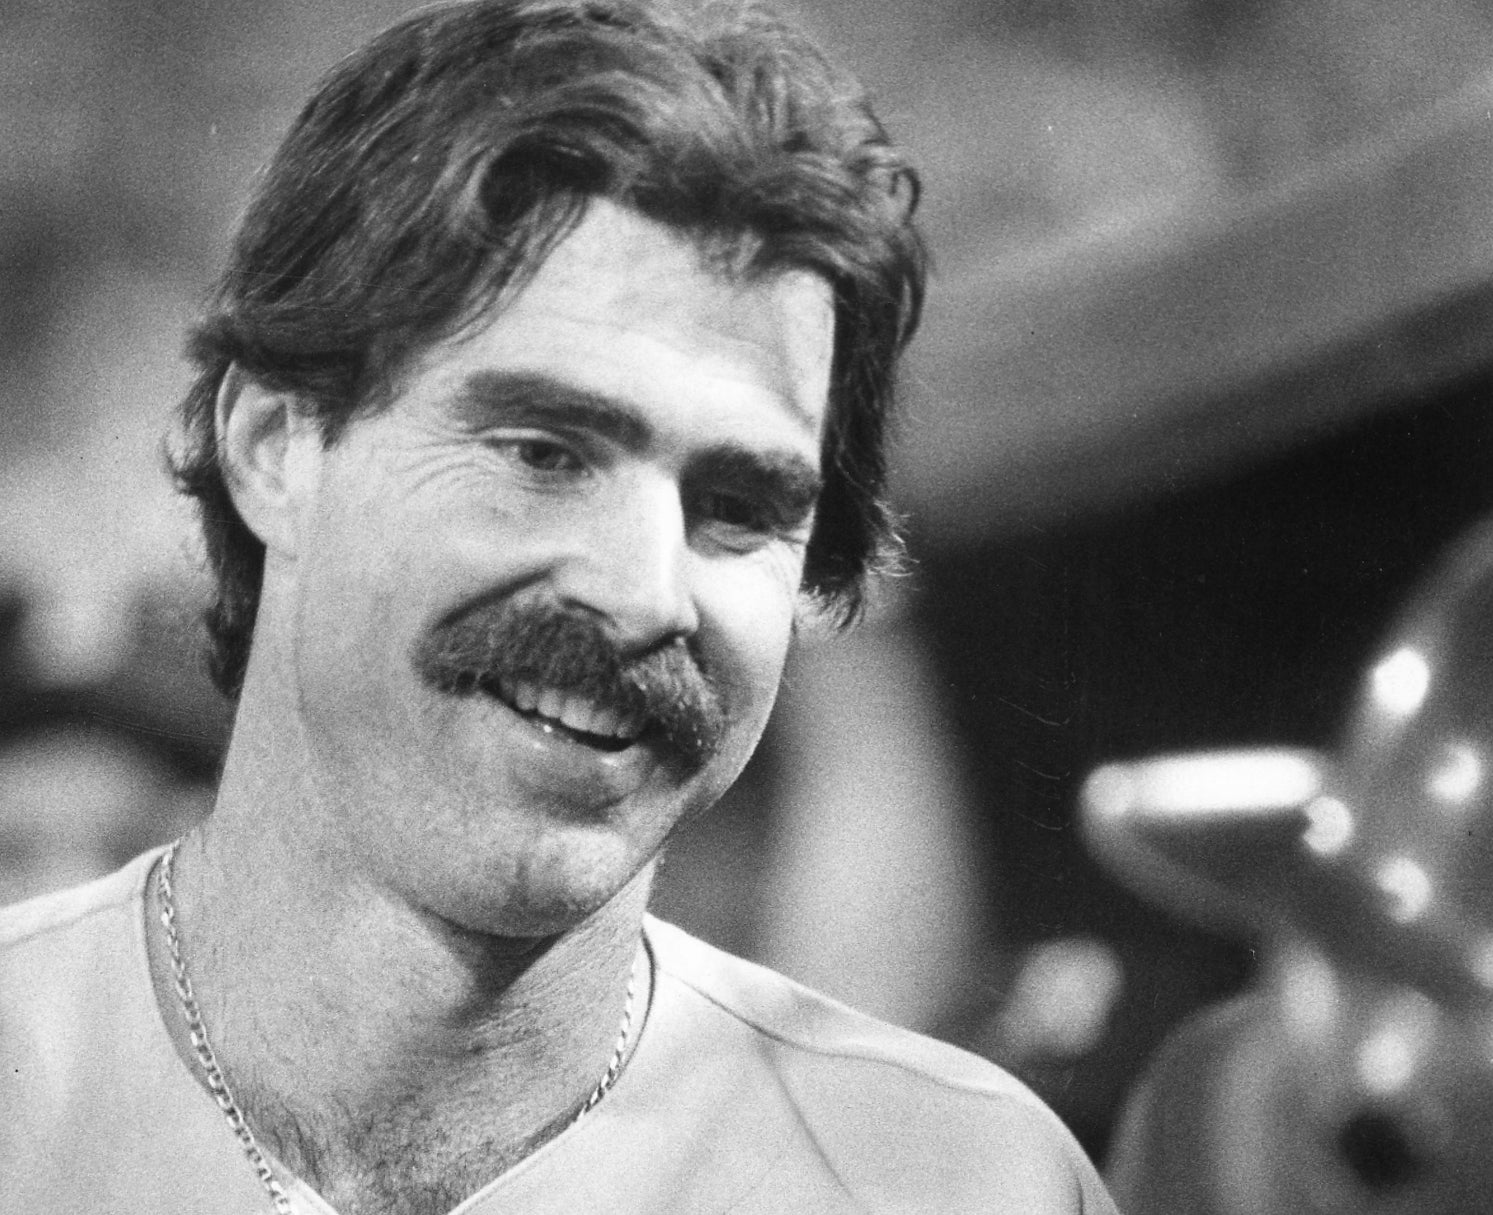 Former Red Sox first baseman Bill Buckner dies at 69